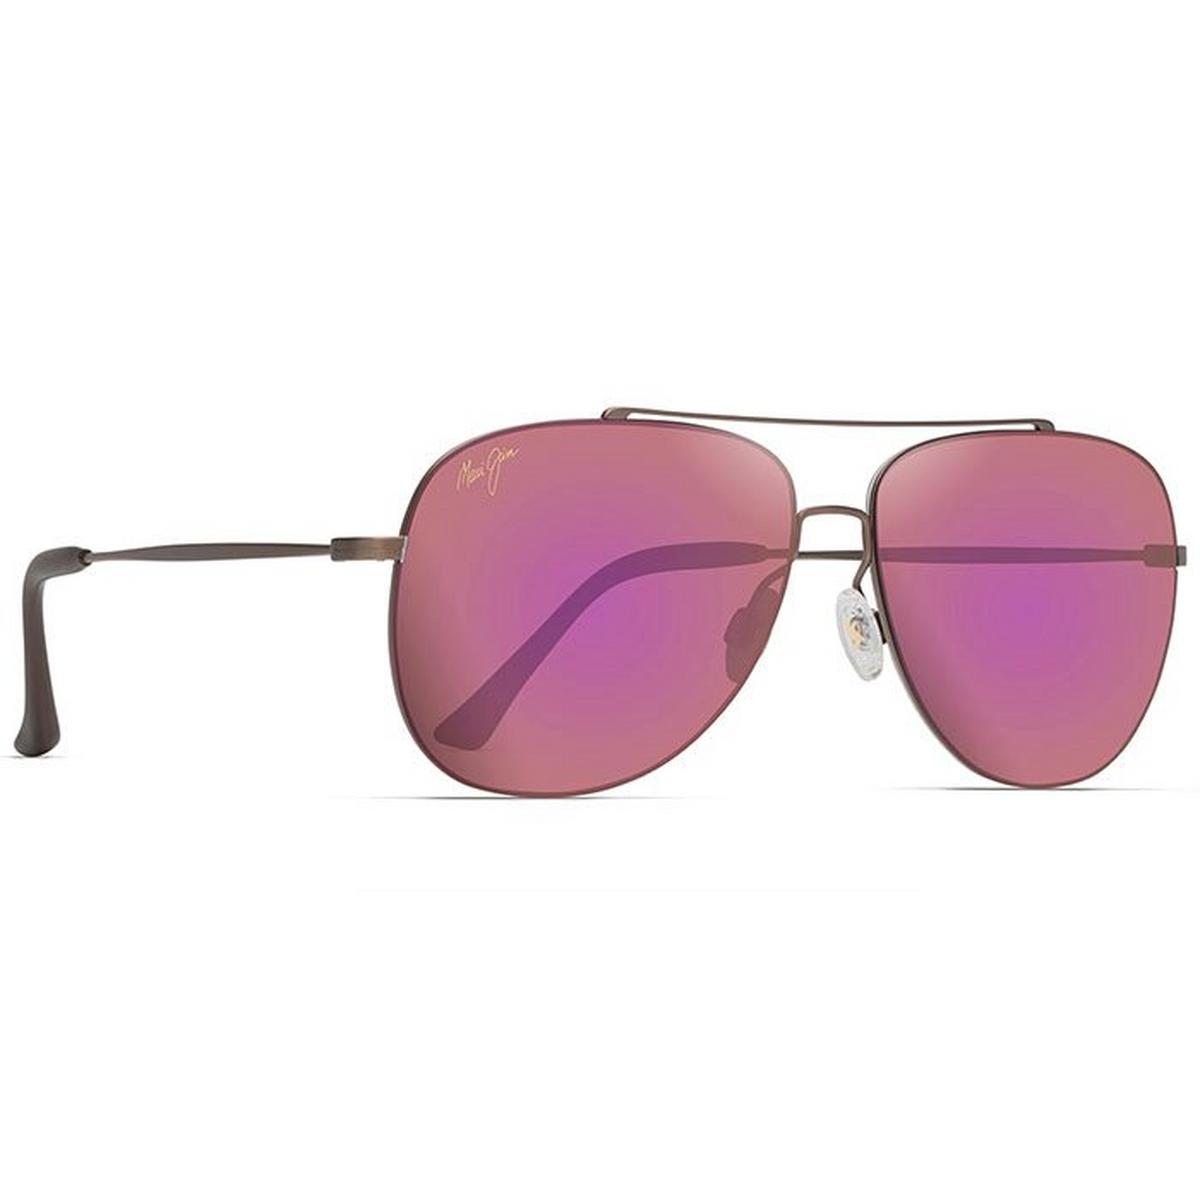 Cinder Cone Sunglasses